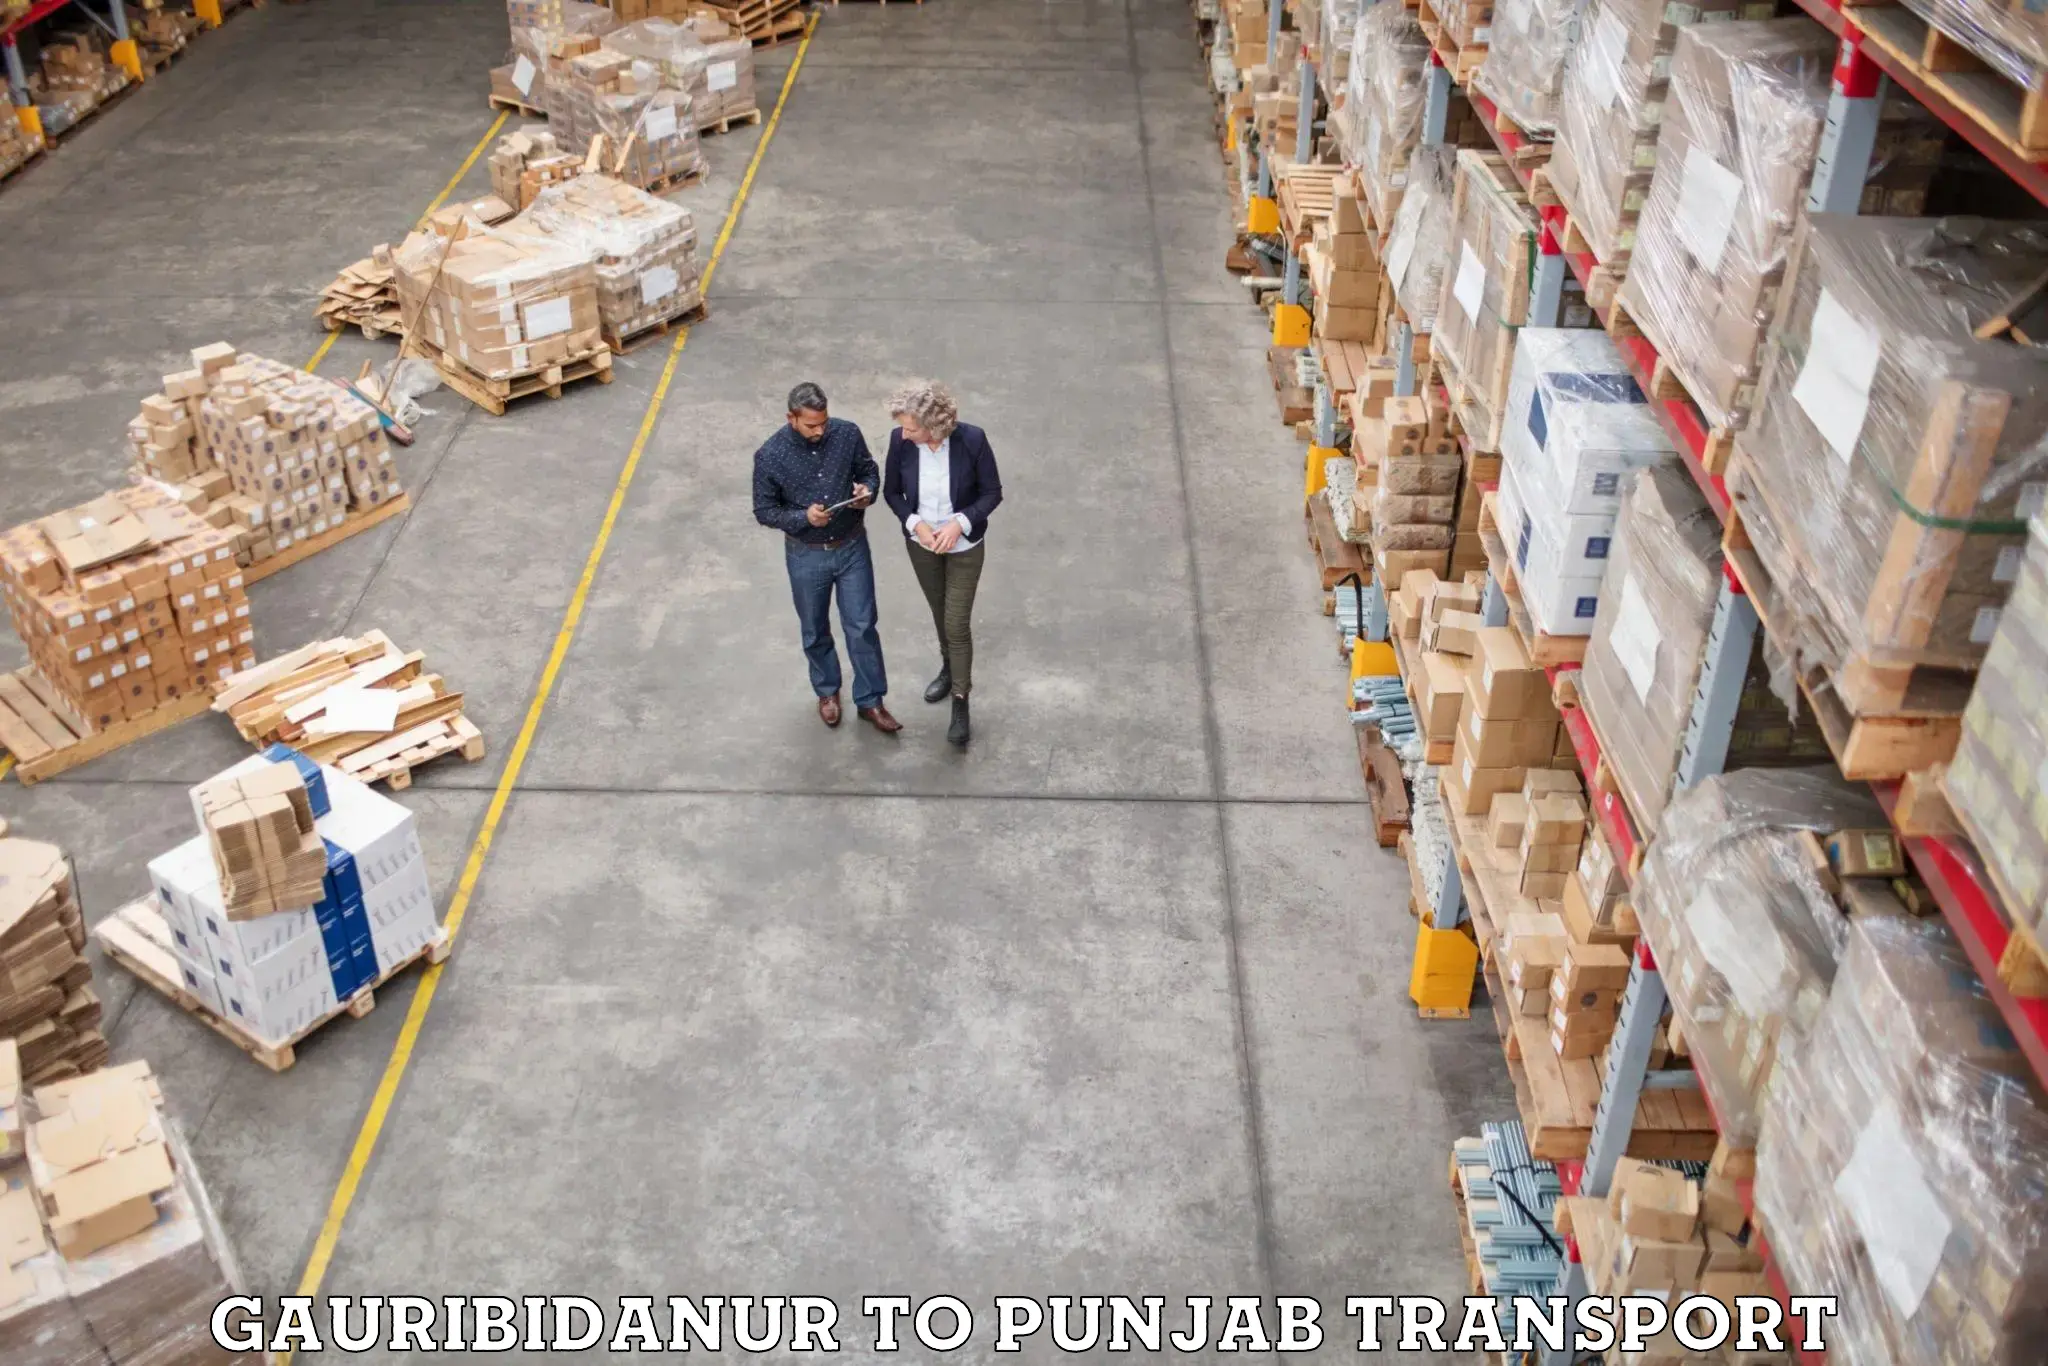 Container transport service Gauribidanur to Jhunir